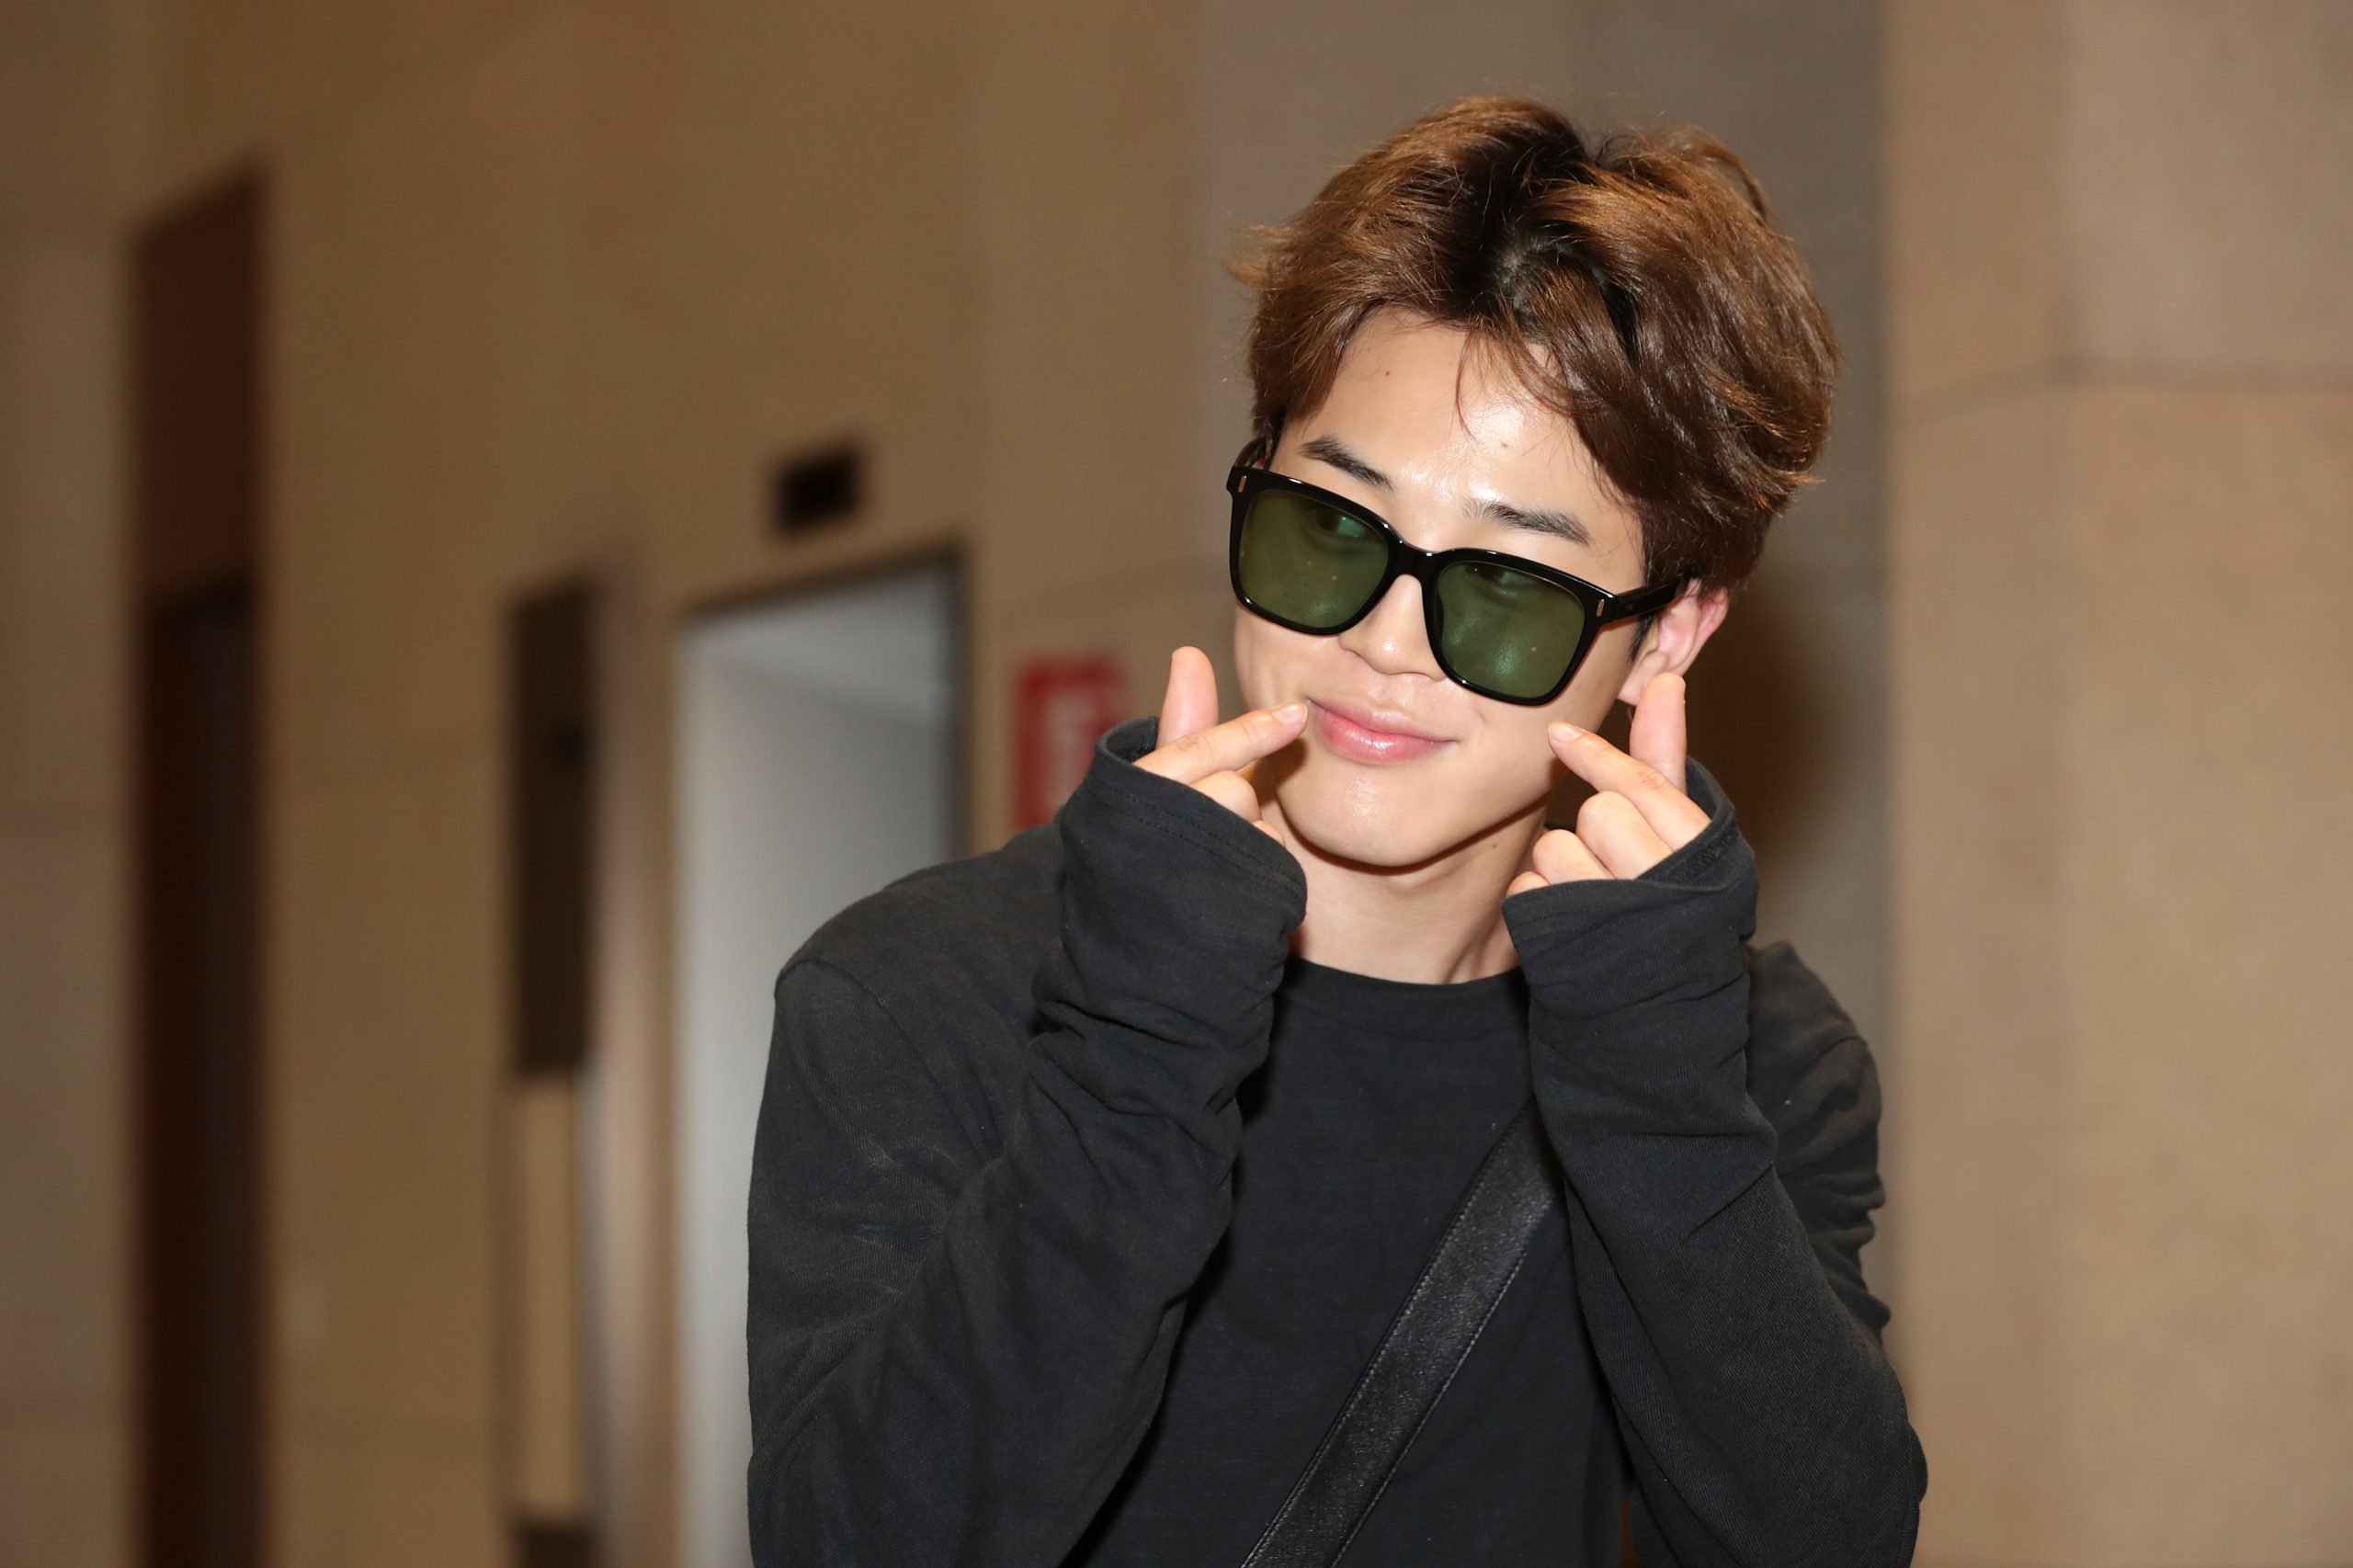 Does BTS Jin wear prescription glasses? - Quora